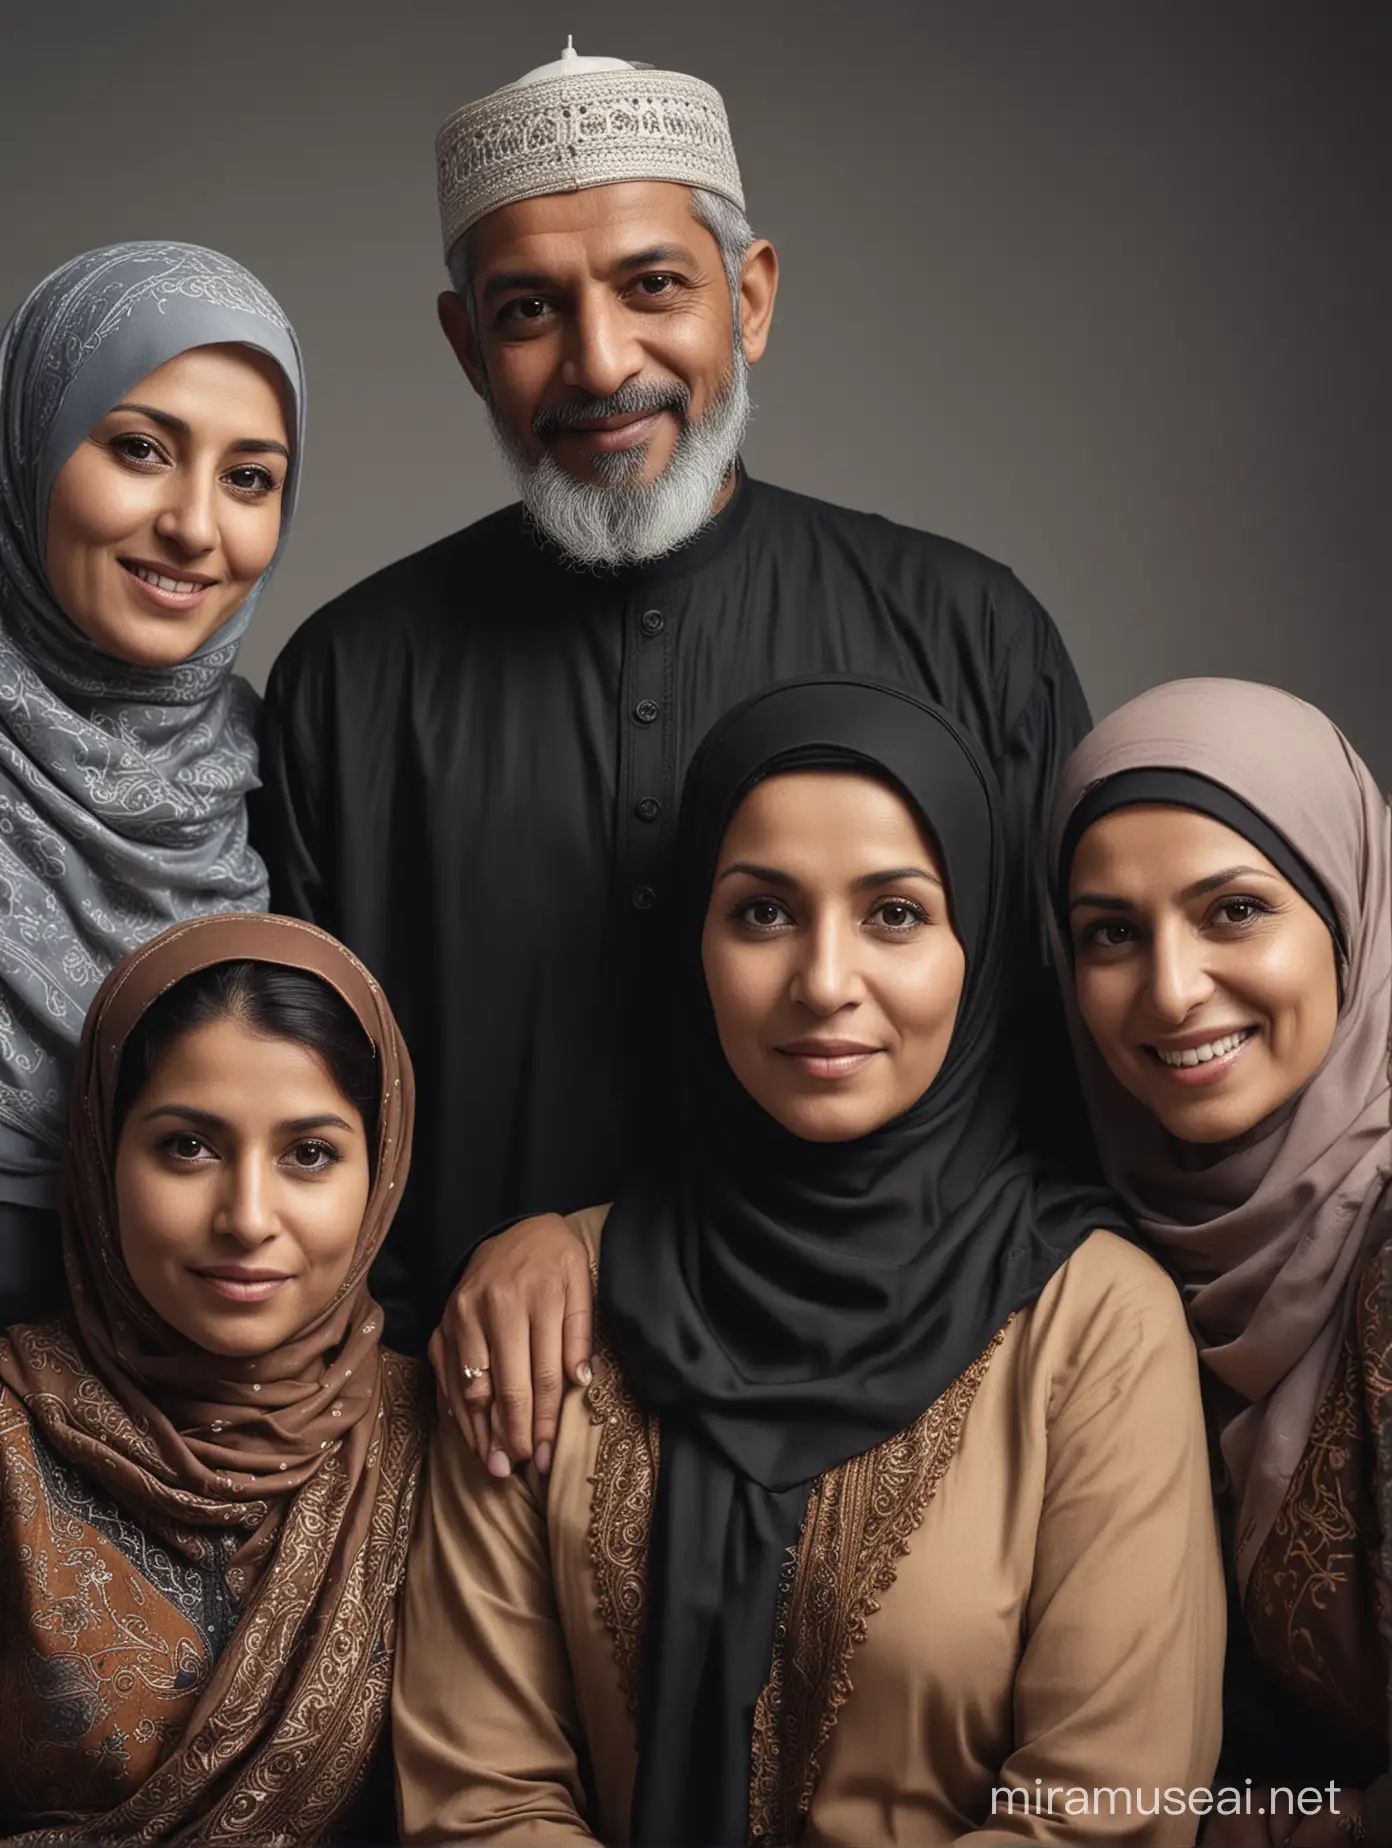 Foto sinematik keluarga muslim 5 orang, terdiri dari pria usia 50 tahun dan 40 tahun, dan 3 wanita usia 55 tahun, 45 tahun, dan 40 tahun, foto realistik super hd.